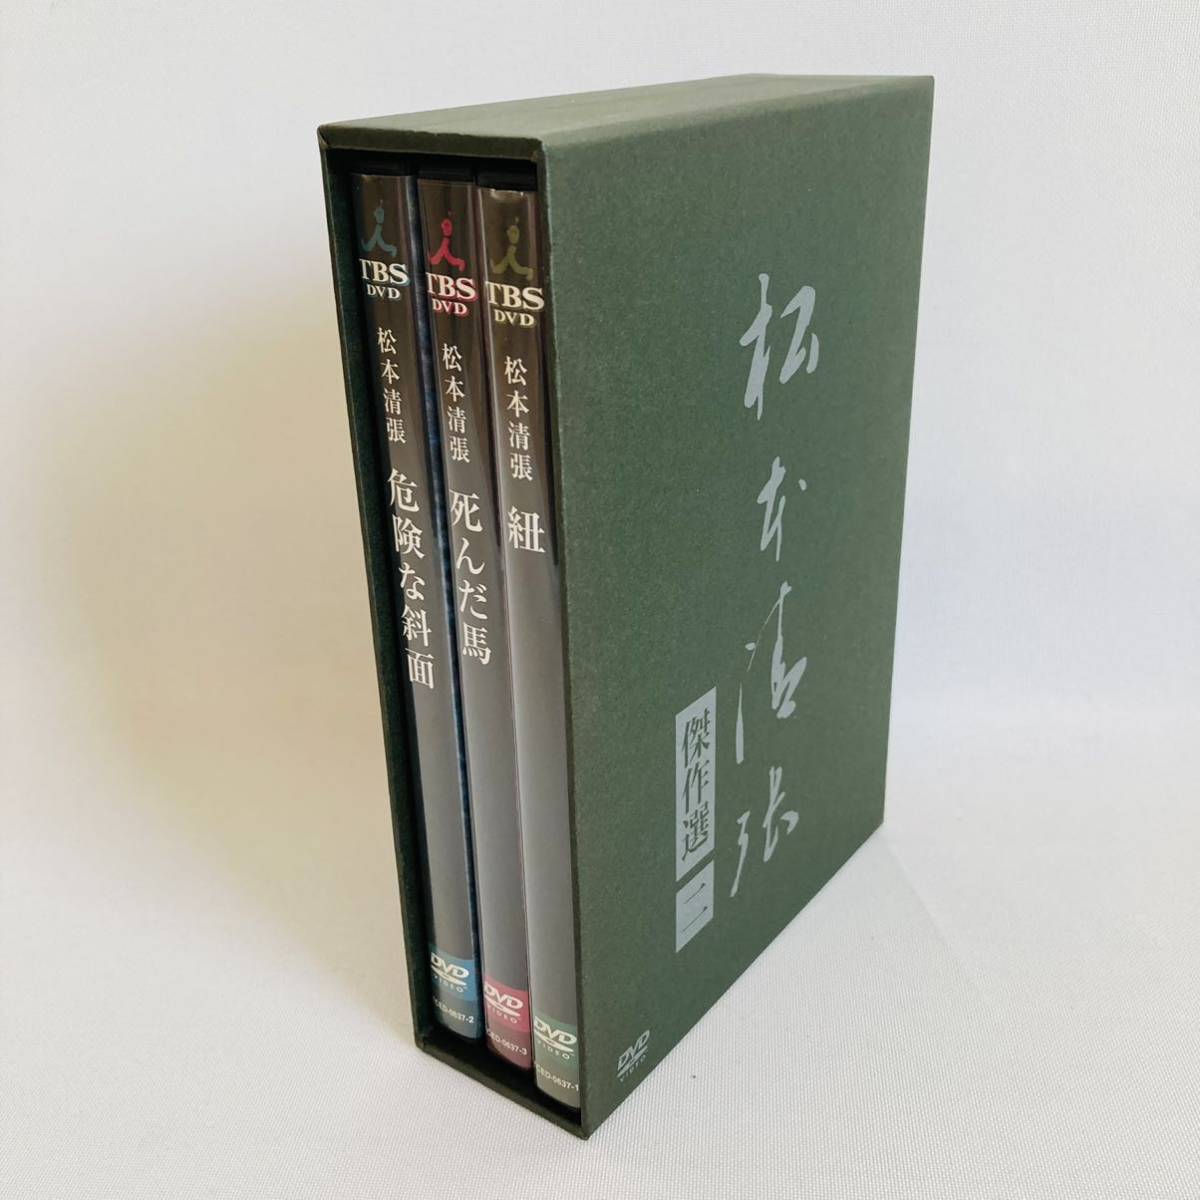 正規店仕入れの 松本清張傑作選 第二弾 DVD全3巻セット mandhucollege